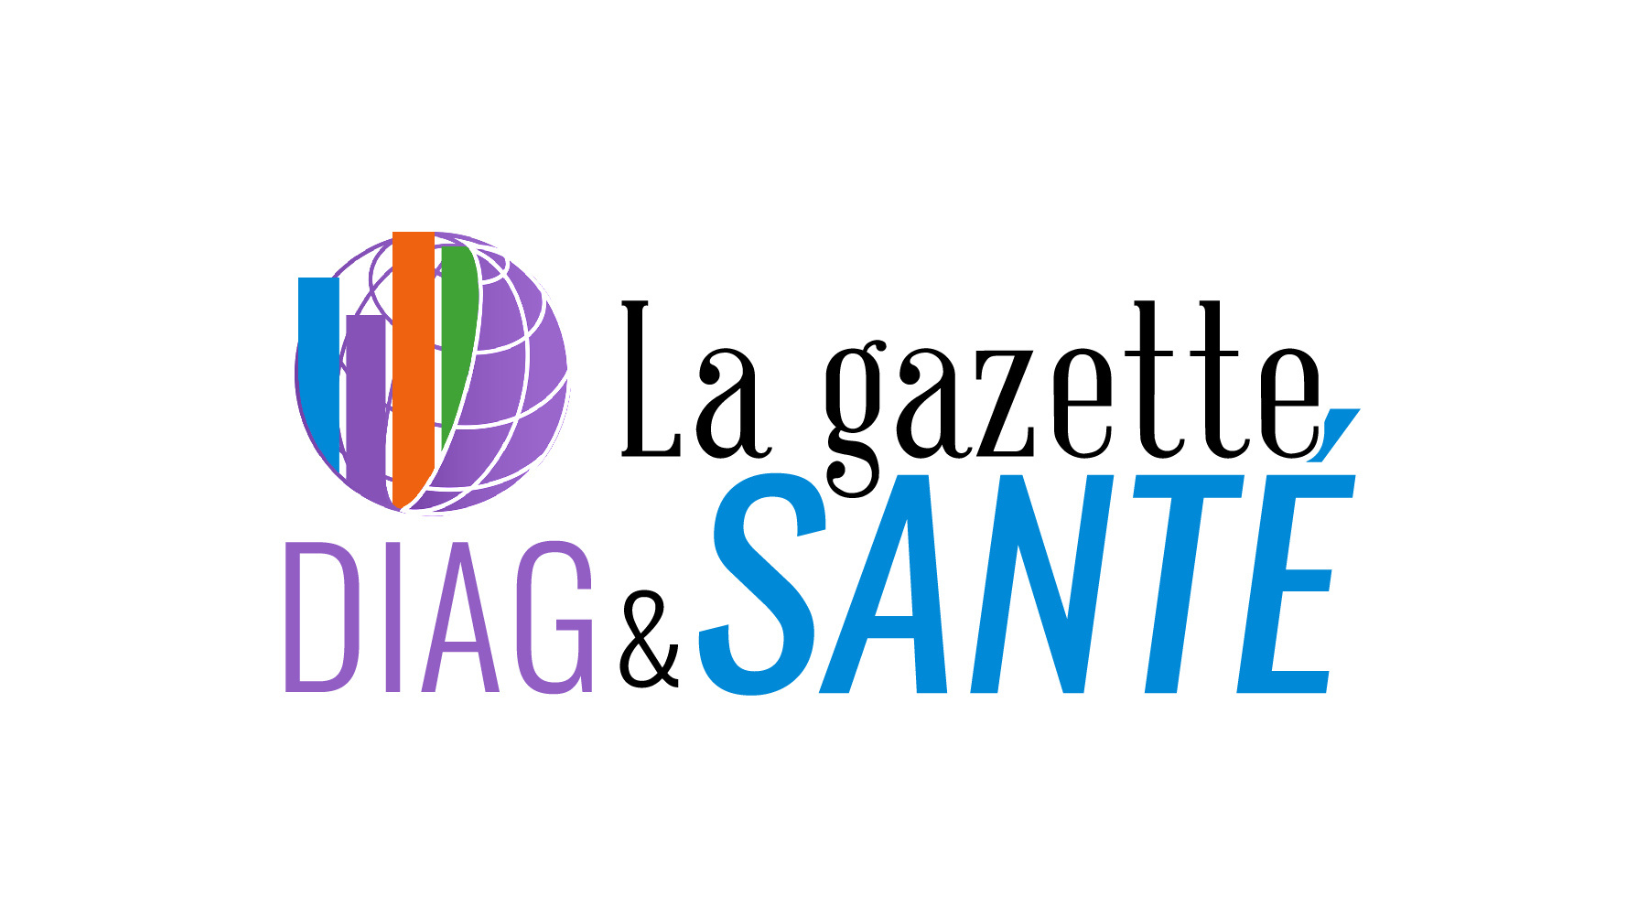 La Gazette Diag & Santé logo